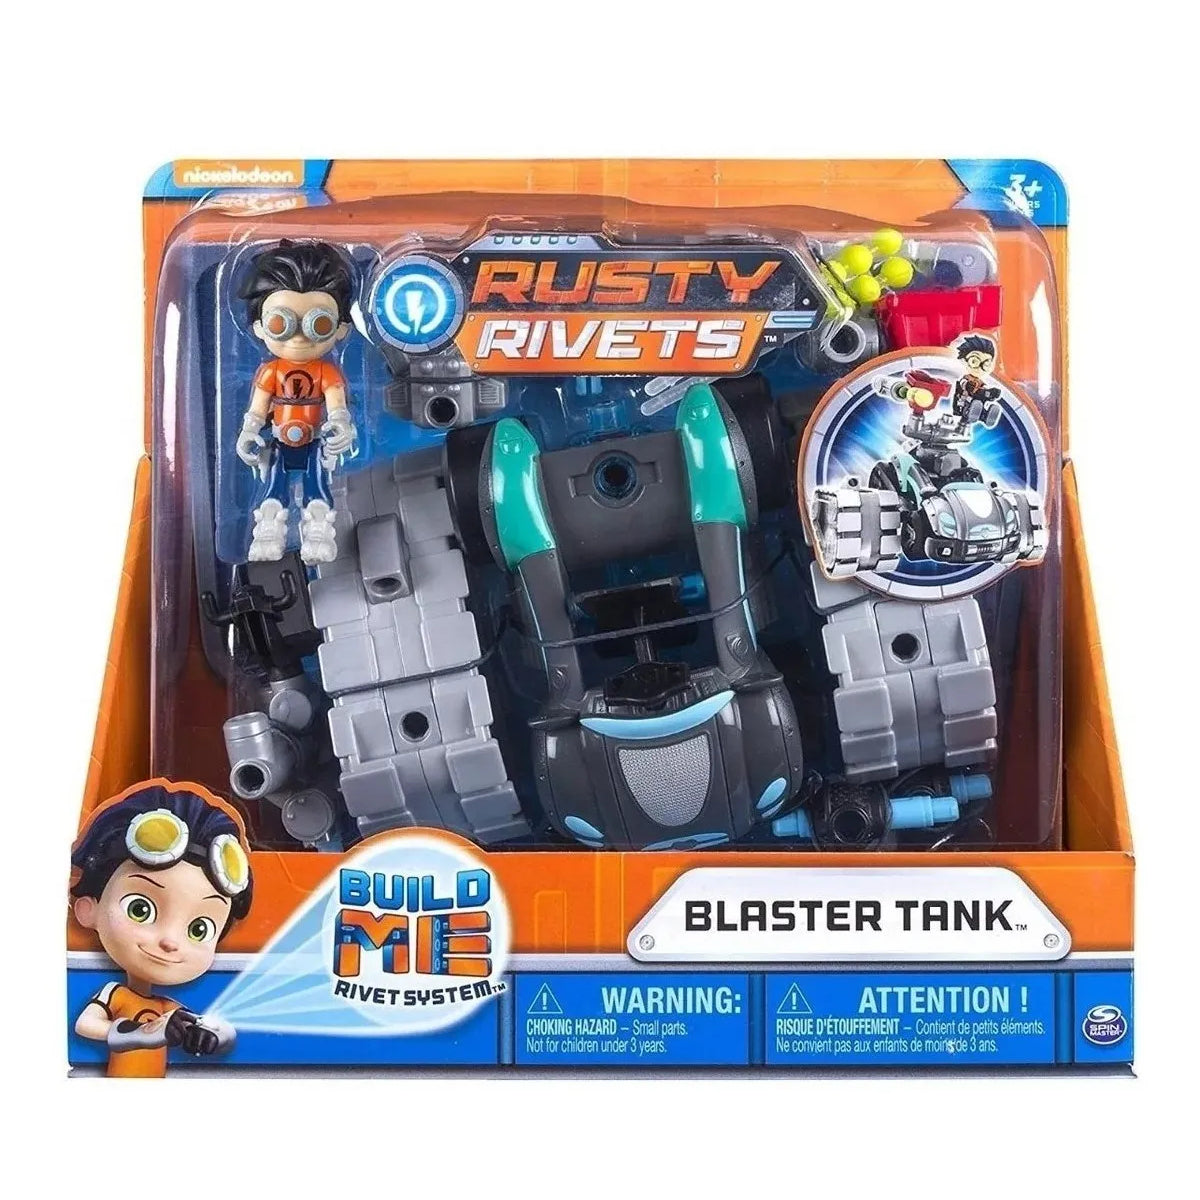 Rusty Rivets Blaster Tank Spin Master